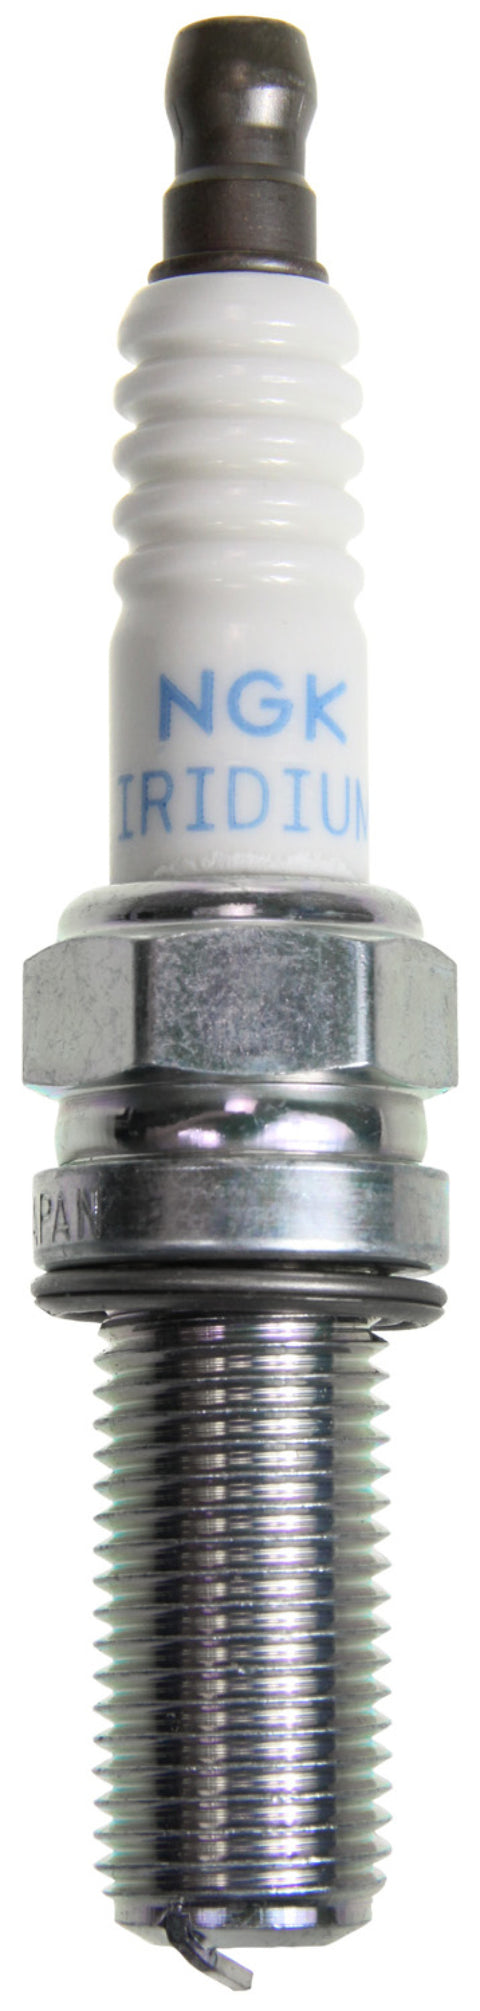 NGK Iridium/Platinum Spark Plug Box of 4 (R2556G-8)